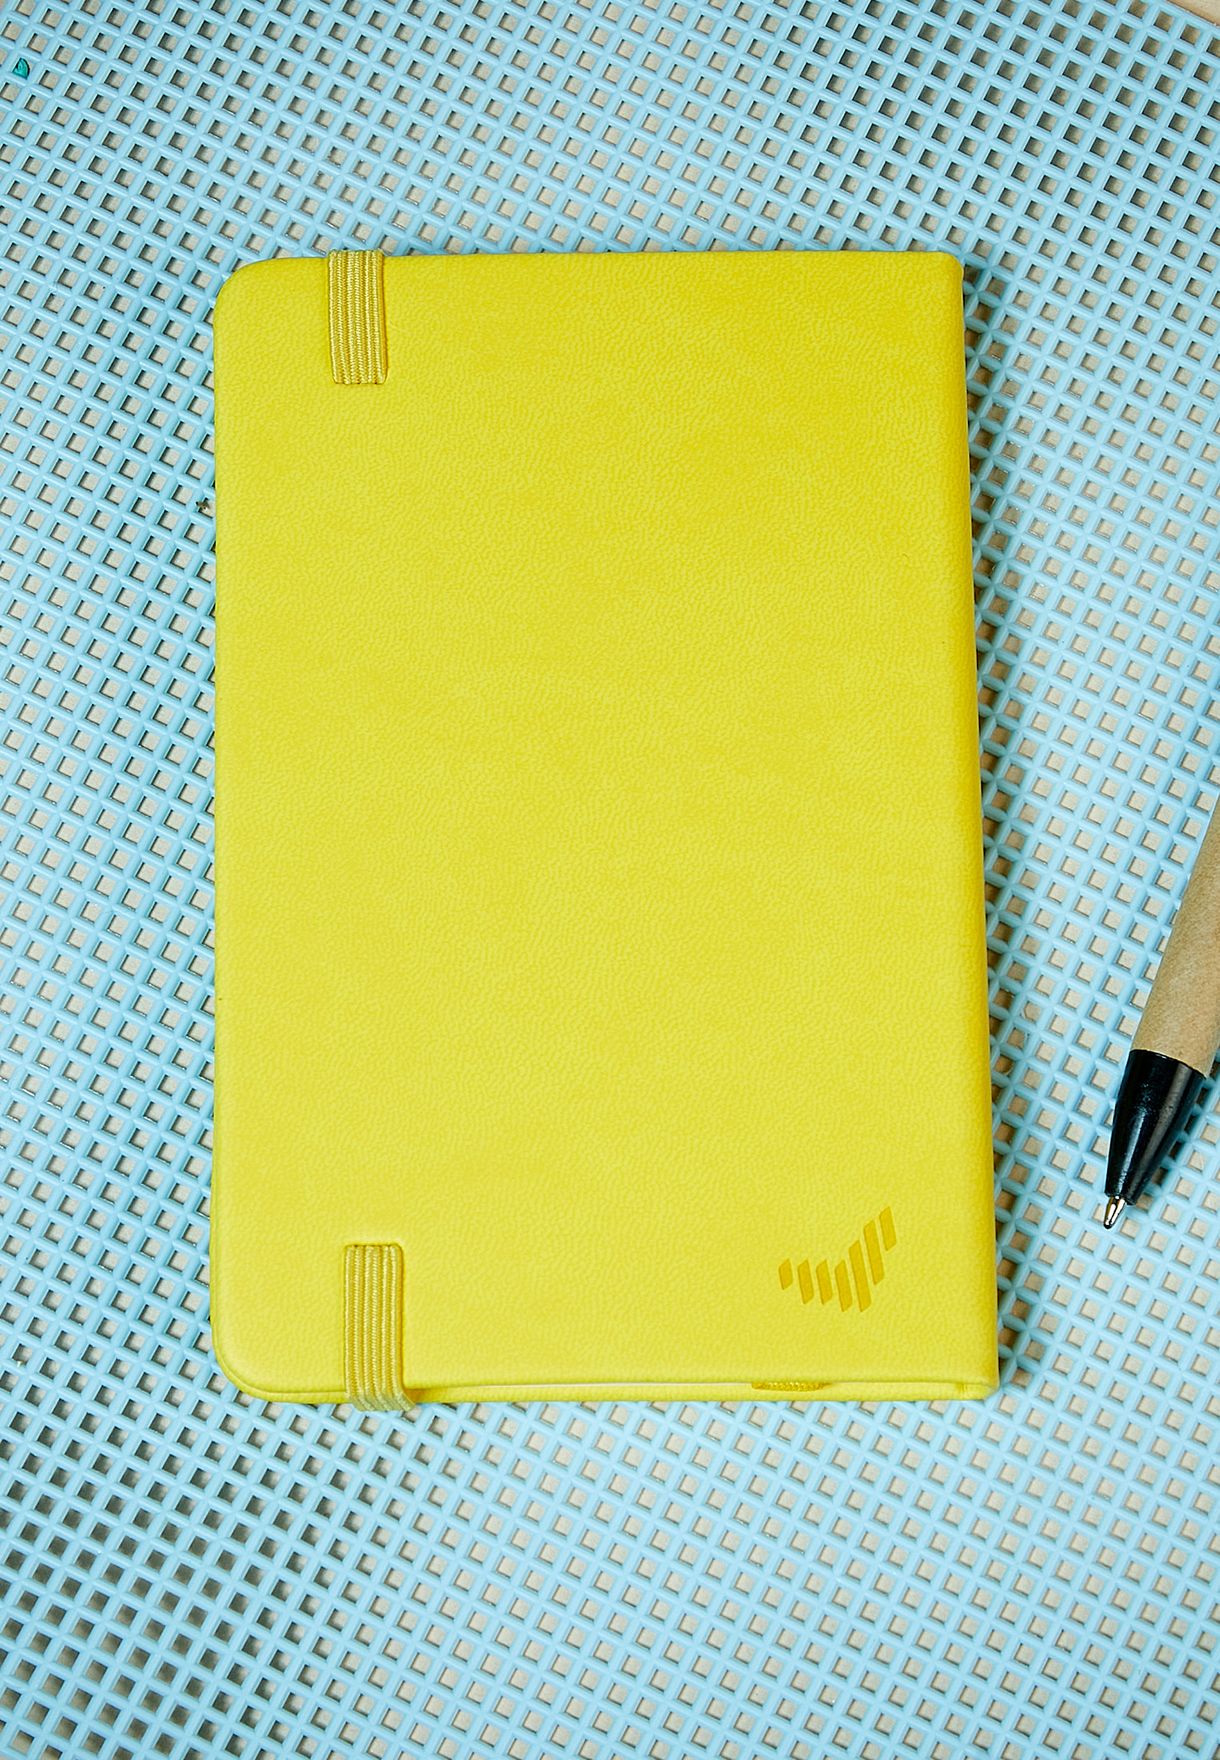 دفتر ملاحظات صغير